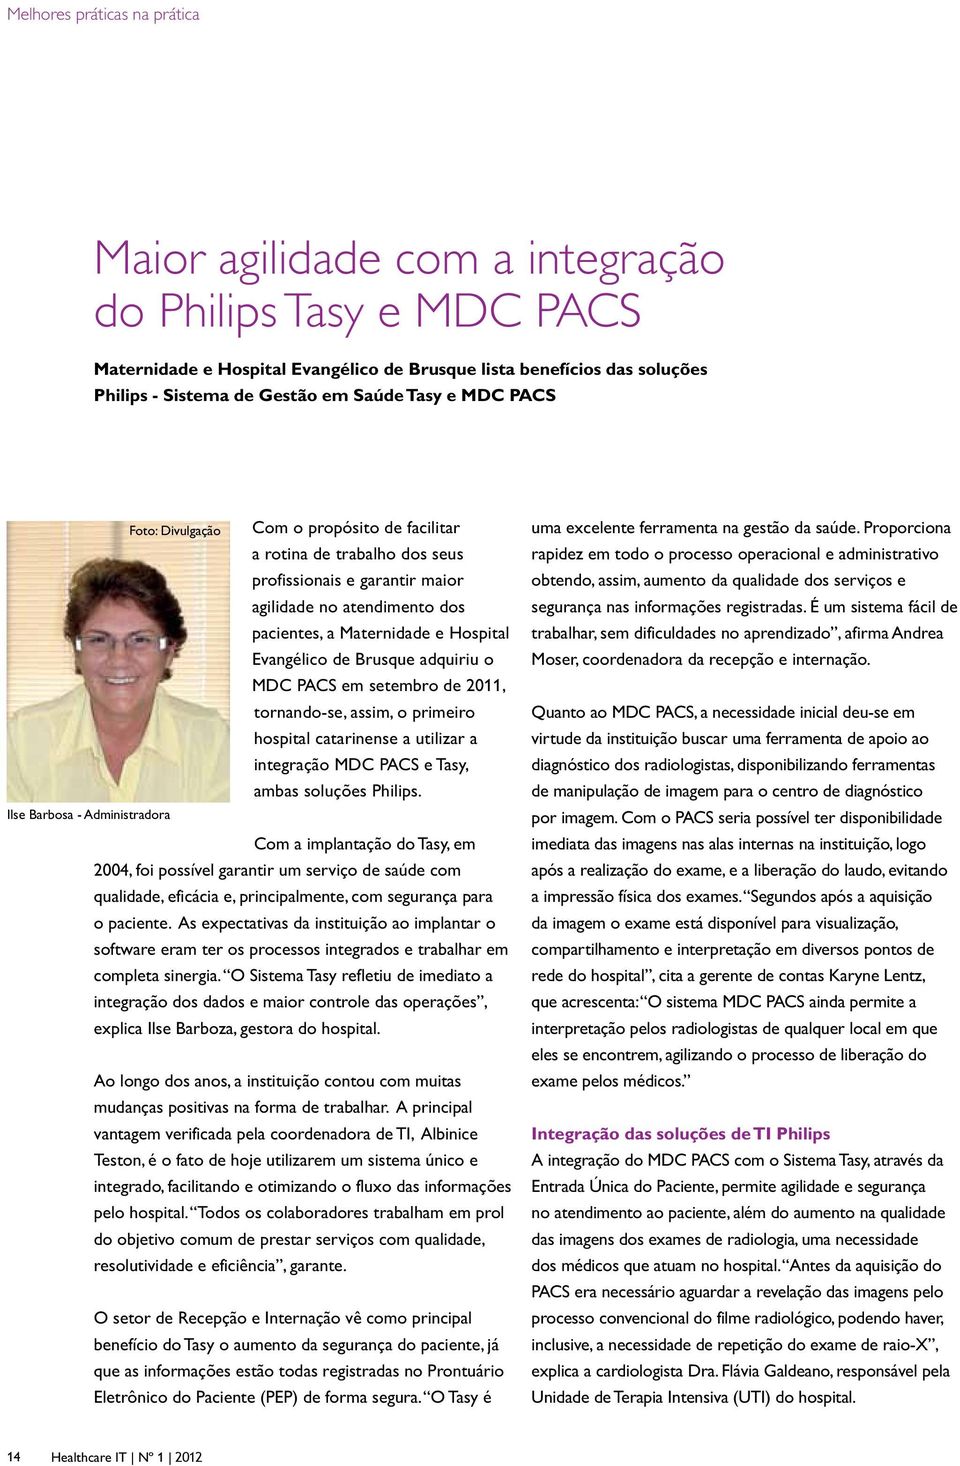 Evangélico de Brusque adquiriu o MDC PACS em setembro de 2011, tornando-se, assim, o primeiro hospital catarinense a utilizar a integração MDC PACS e Tasy, ambas soluções Philips.